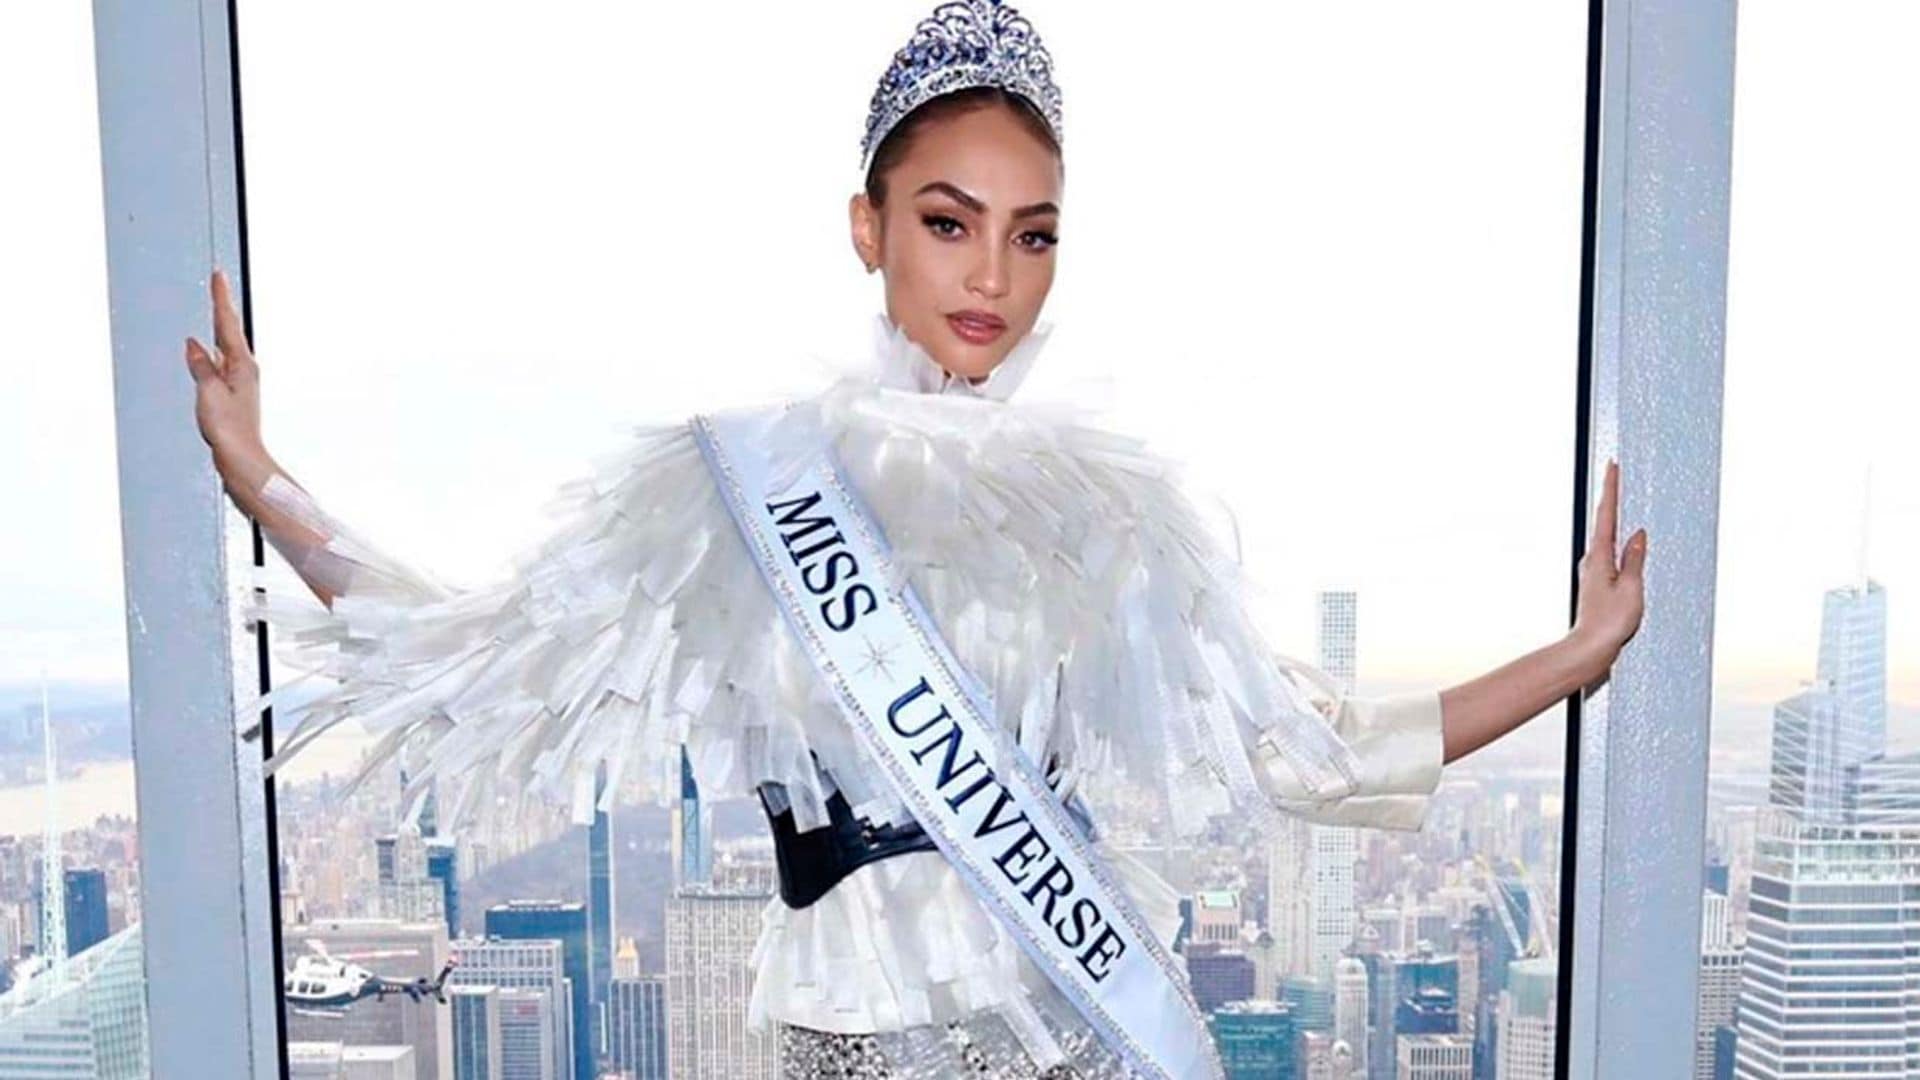 La nueva Miss Universo nos cuenta qué ha sentido al ser elegida la mujer más bella